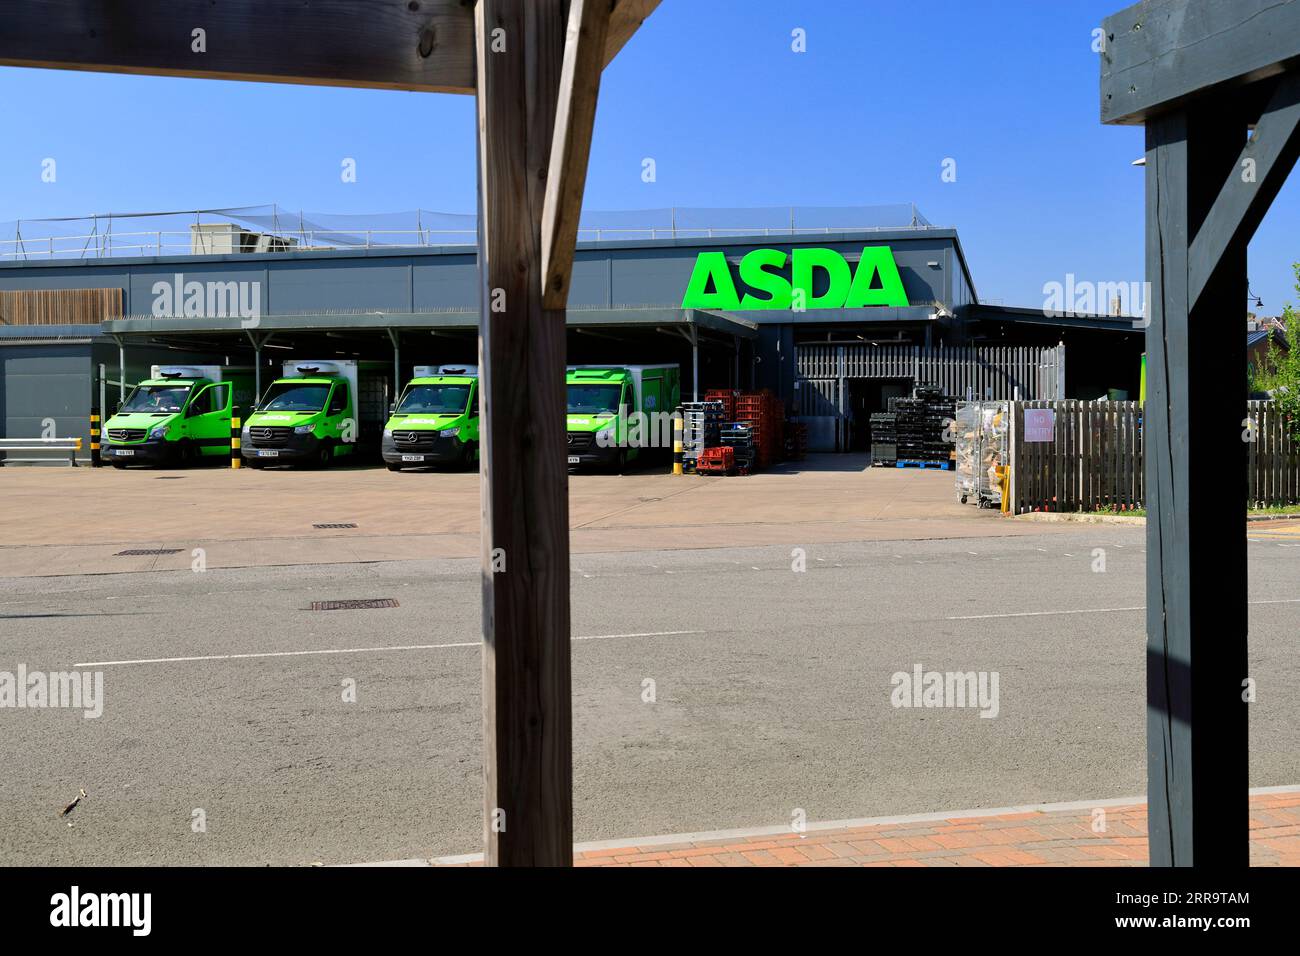 Magasin Asda et camionnettes de livraison, Barry, Vale of Glamorgan, Galles du Sud. Banque D'Images